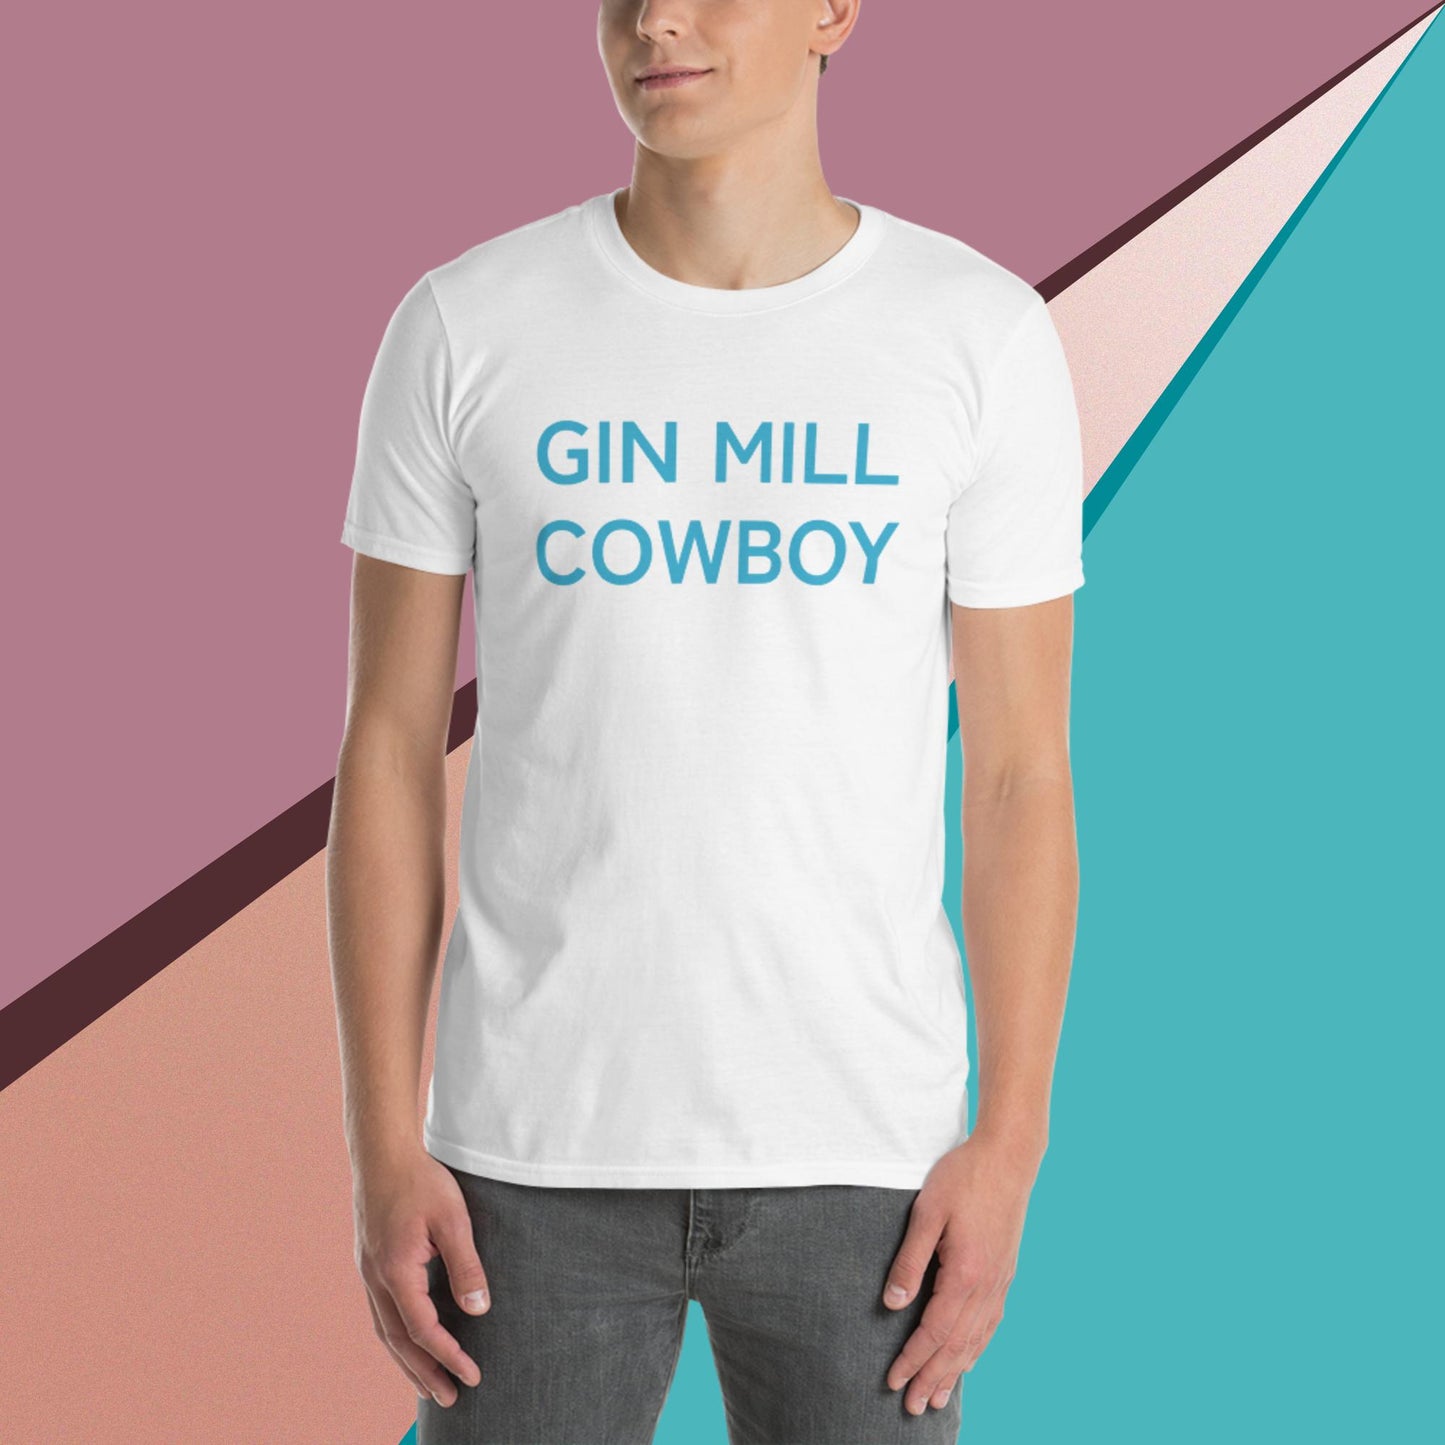 GIN MILL COWBOY...a Beat Short-Sleeve Unisex T-Shirt